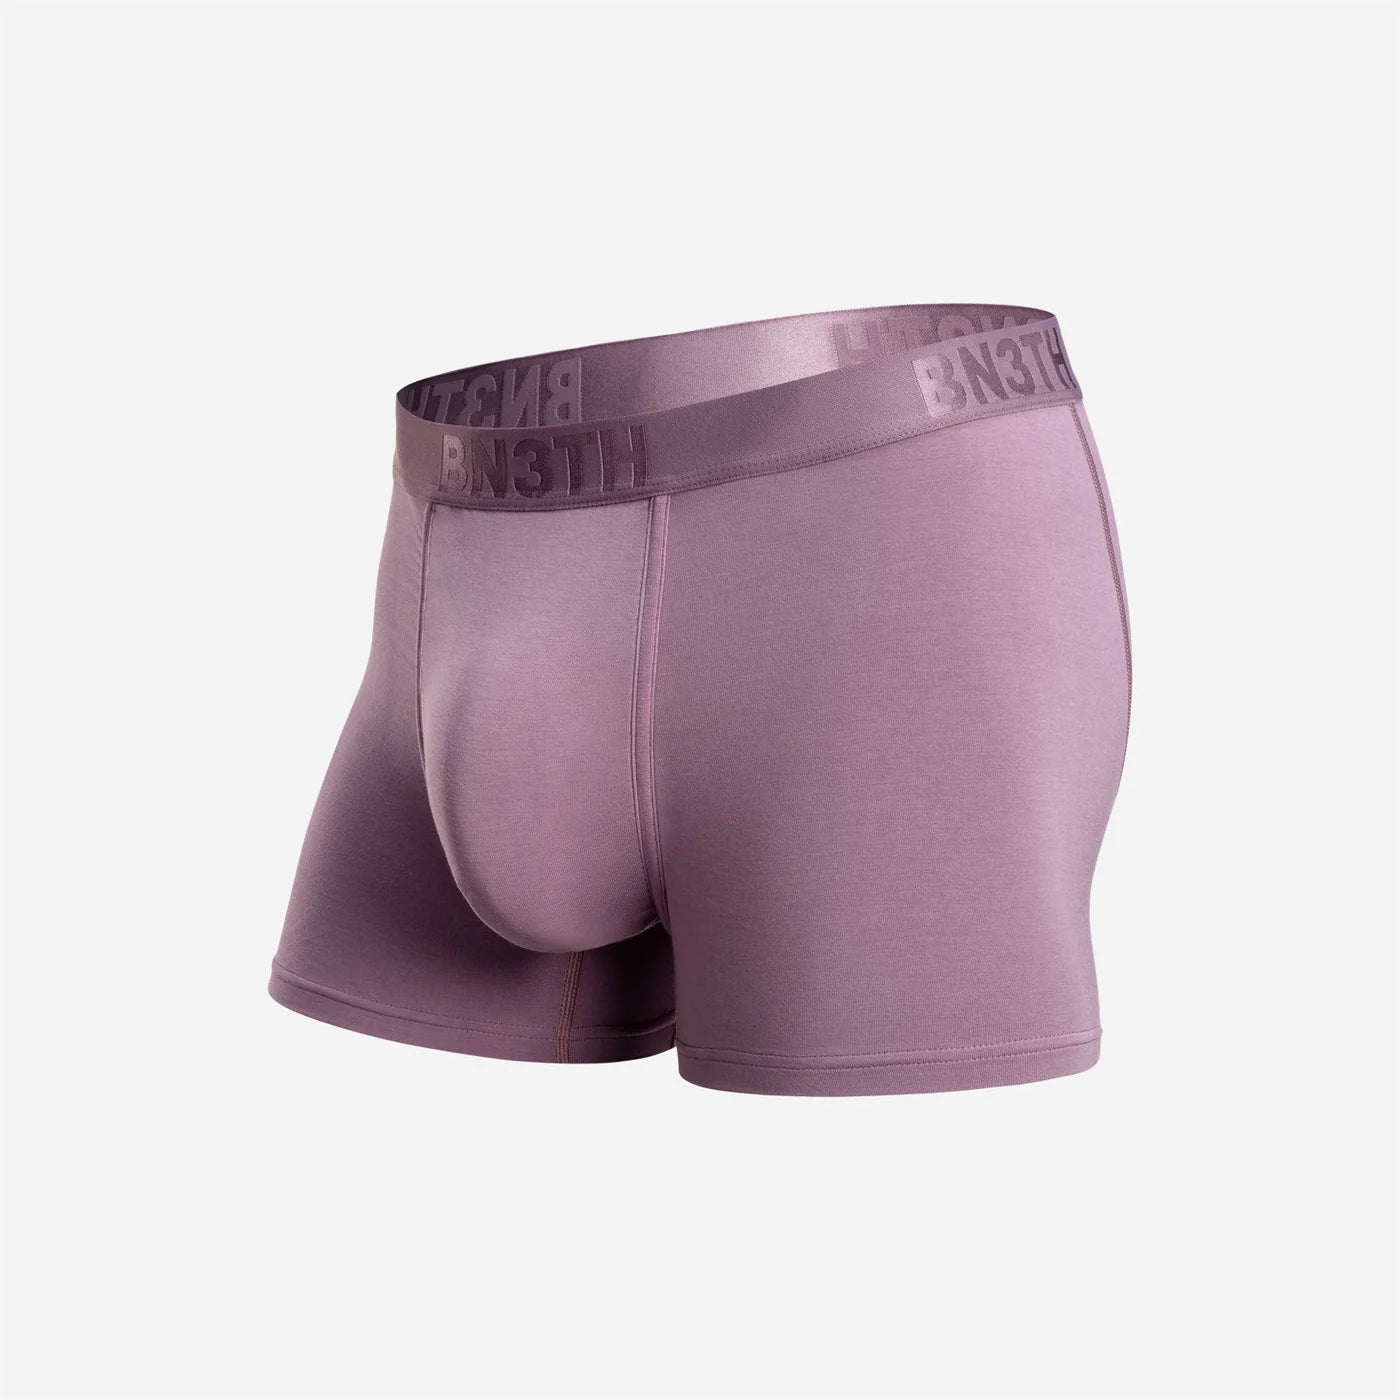 BN3TH by MyPakage Men's Entourage Boxer Brief Underwear Cosmos Teal NWT